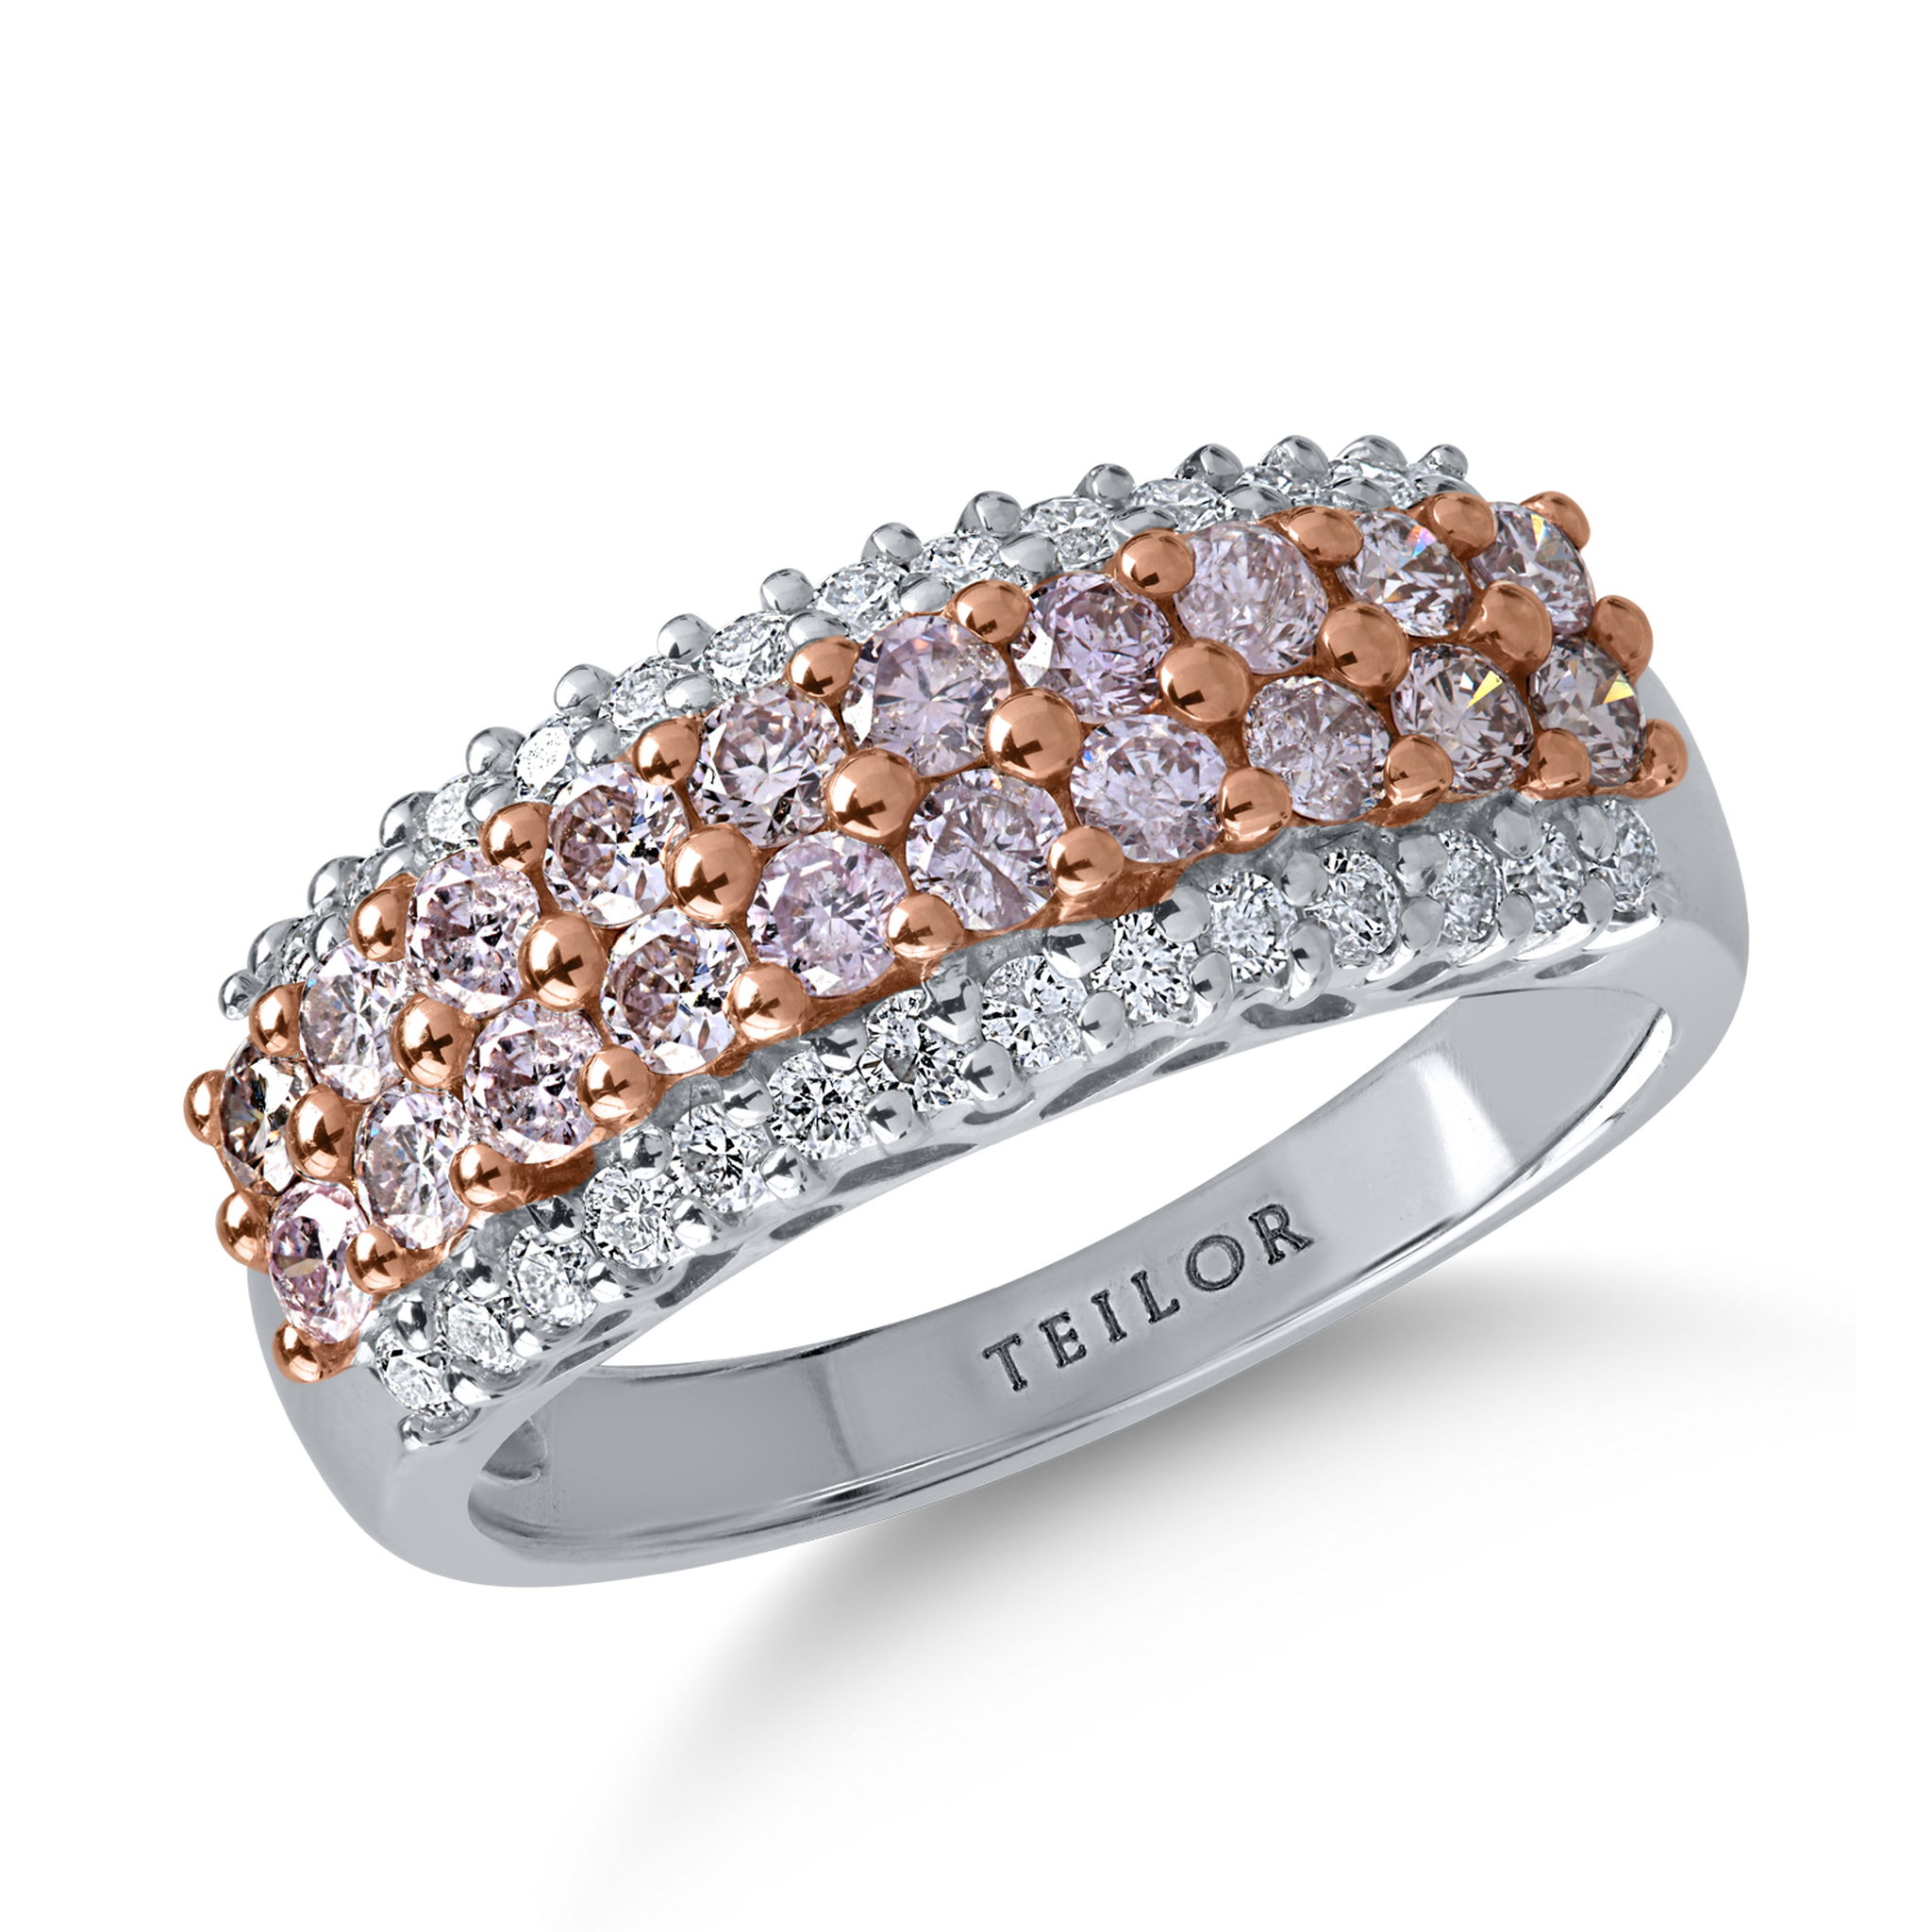 Pierścionek z białego różowego złota z różowymi diamentami o masie 0.68ct i bezbarwnymi diamentami o masie 0.23ct